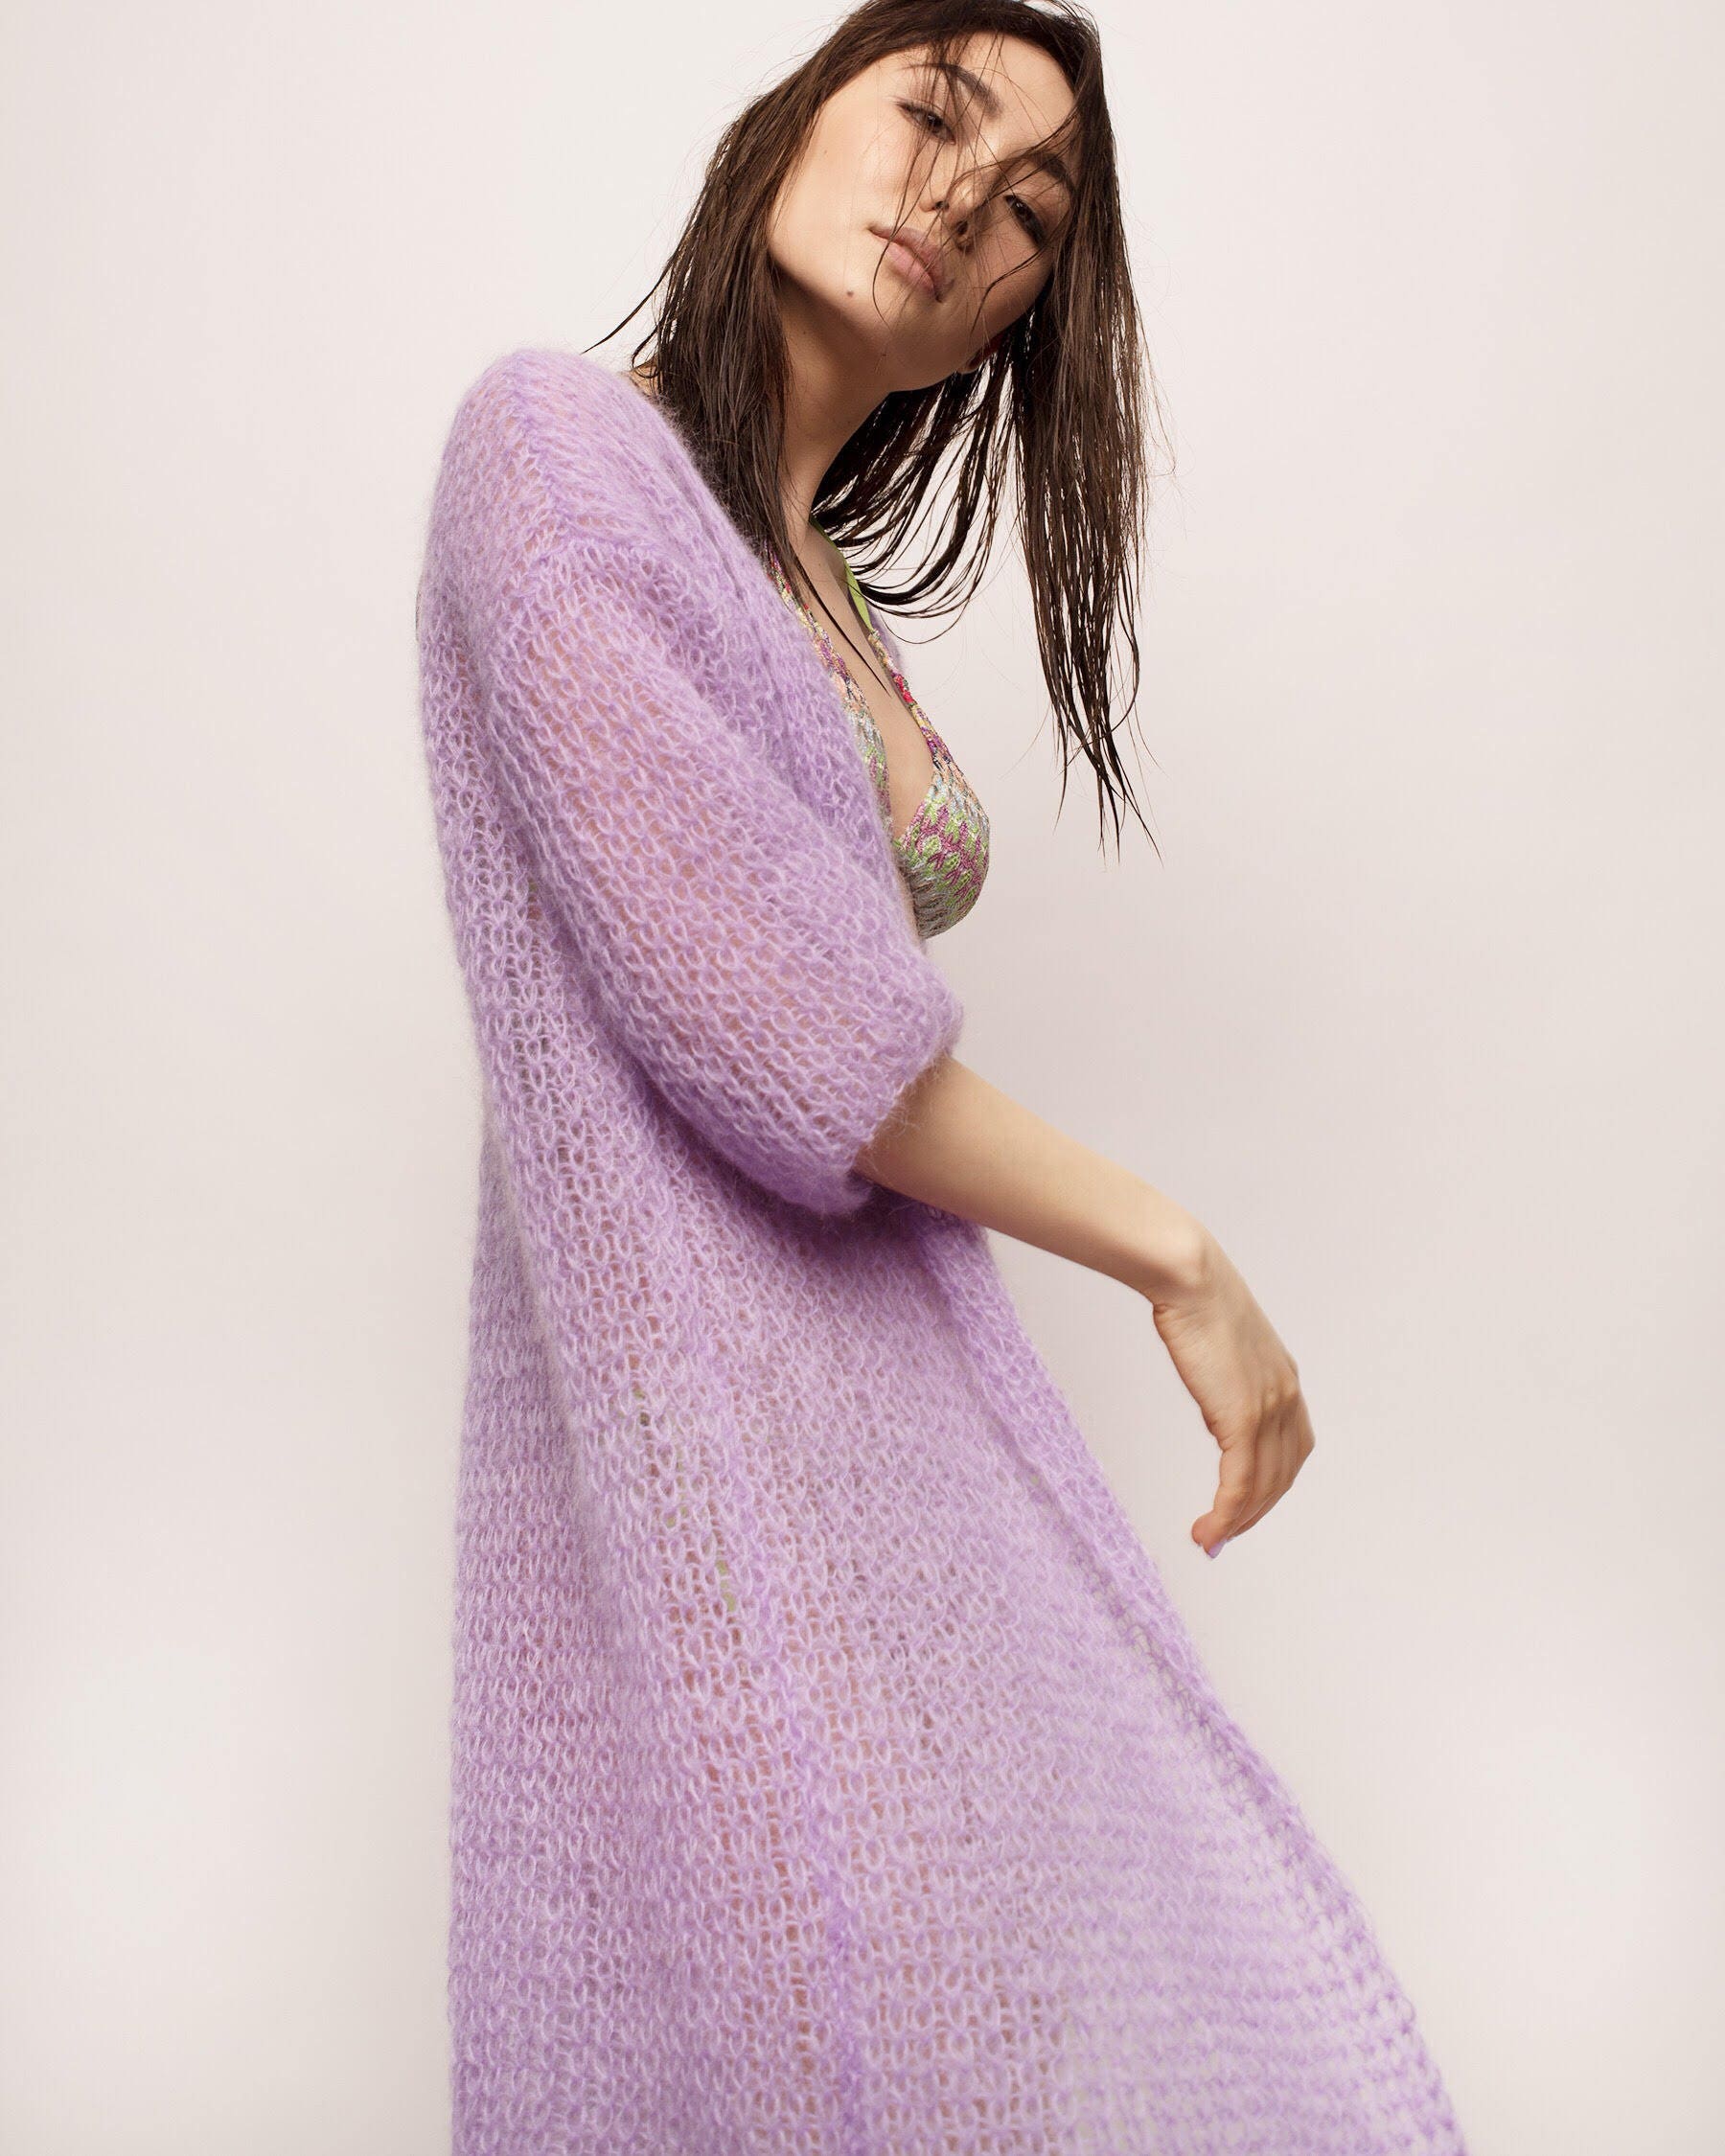 【にオススメ】 JOHN LAWRENCE SULLIVAN - littlebig mohair knit purpleの通販 by